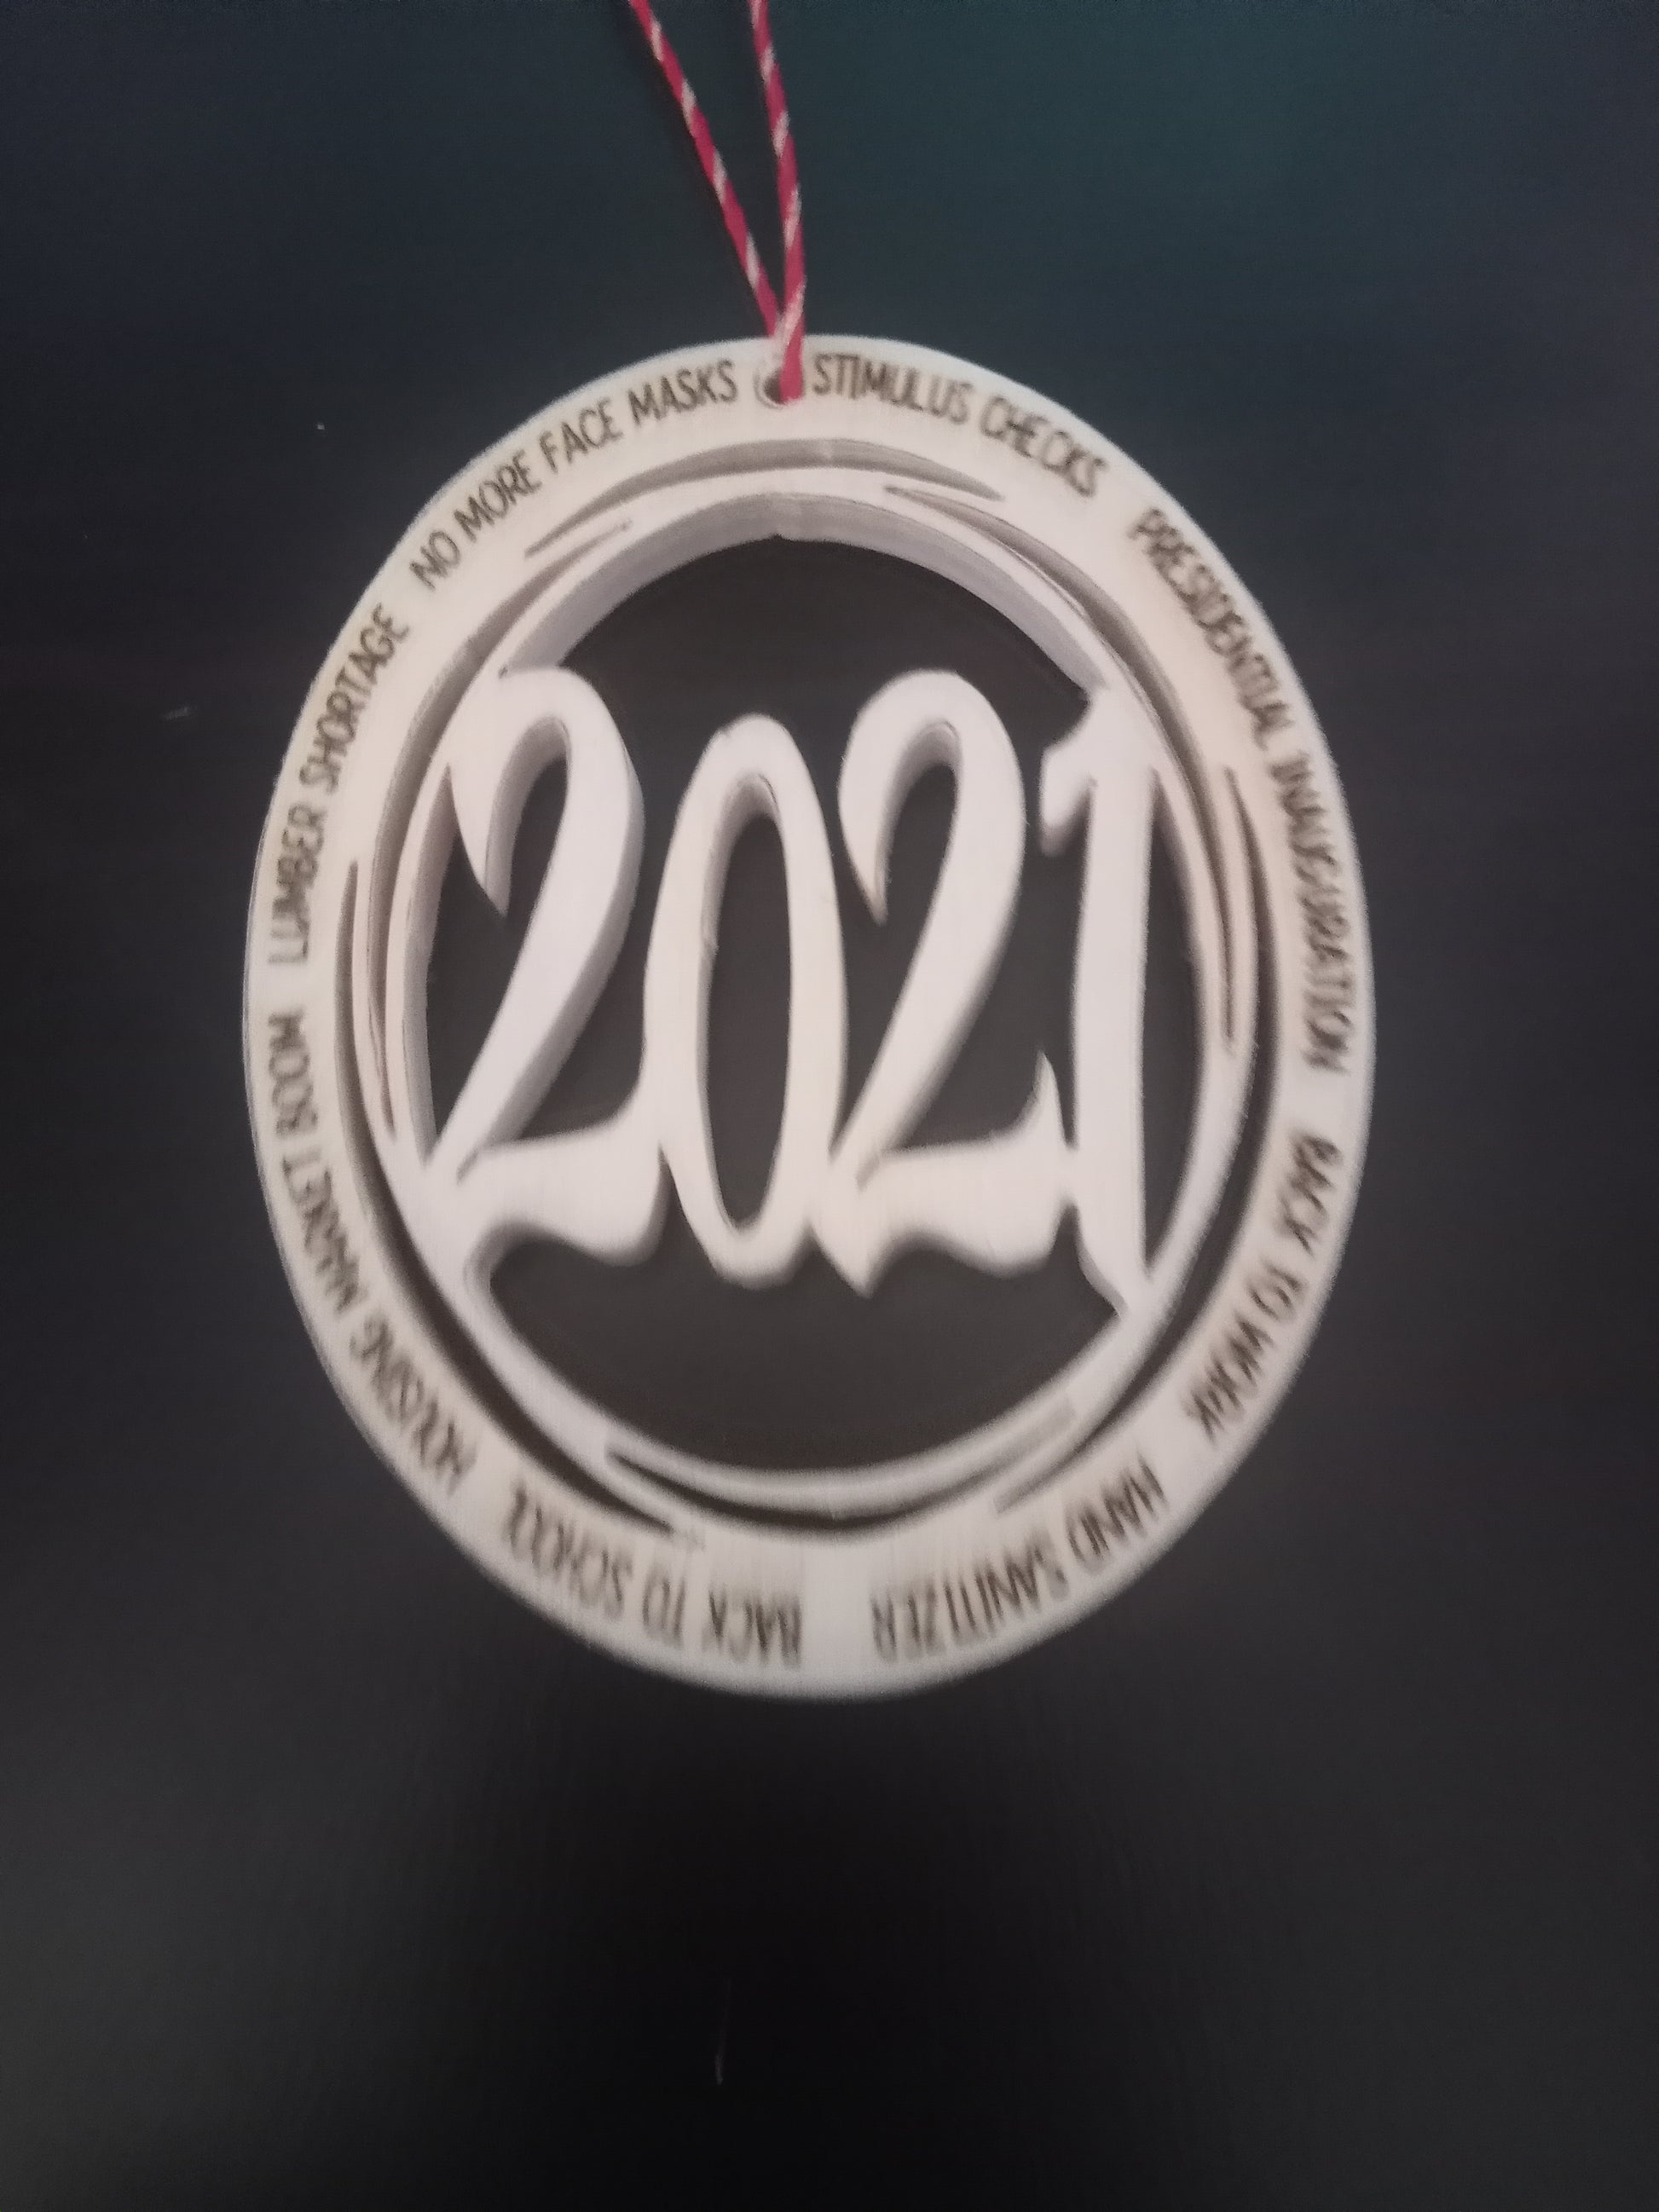 2021 laser engraved ornament